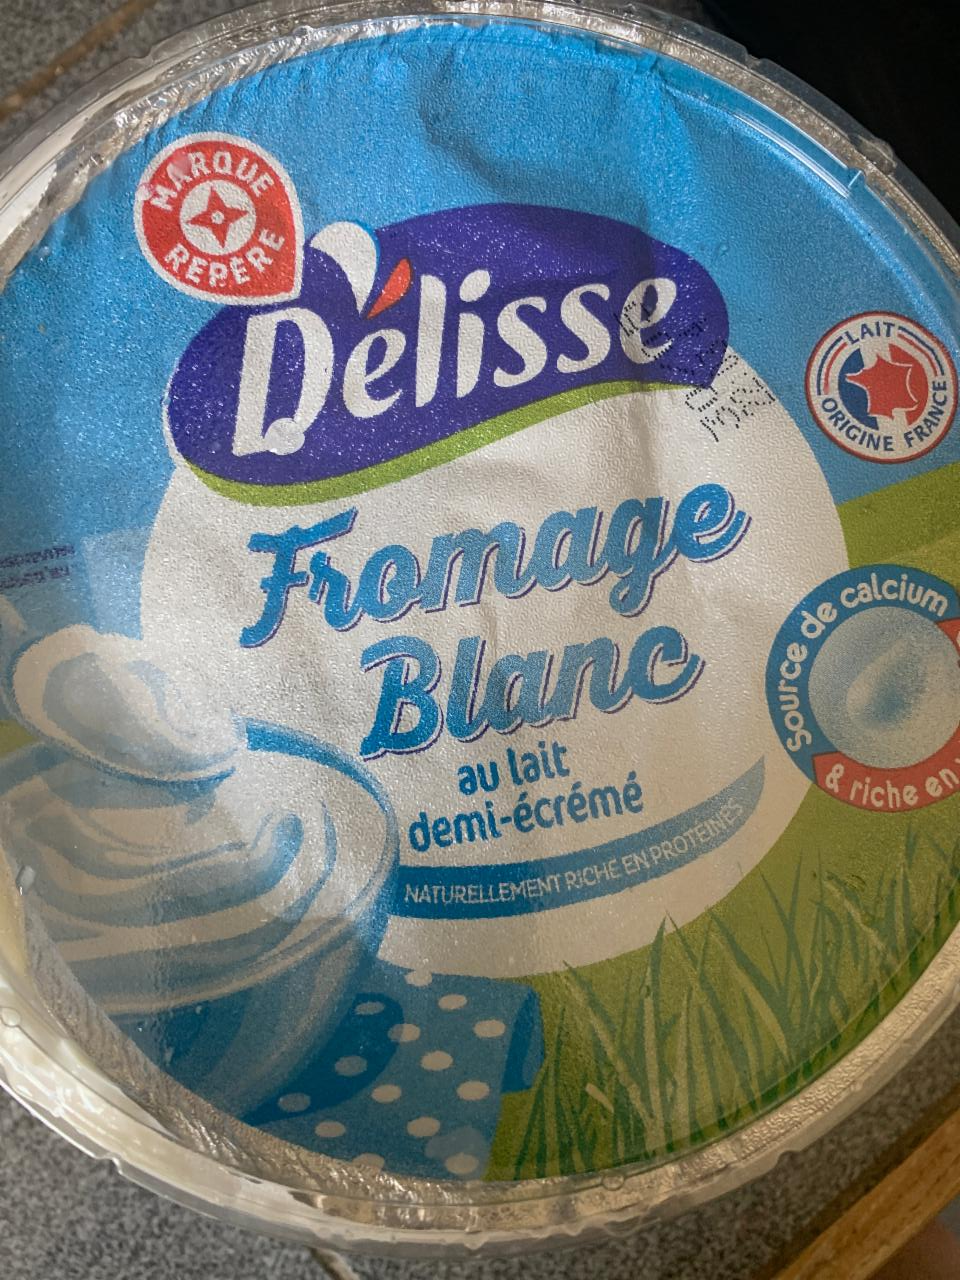 Fotografie - Fromage Blanc au lait demi-écrémé Délisse